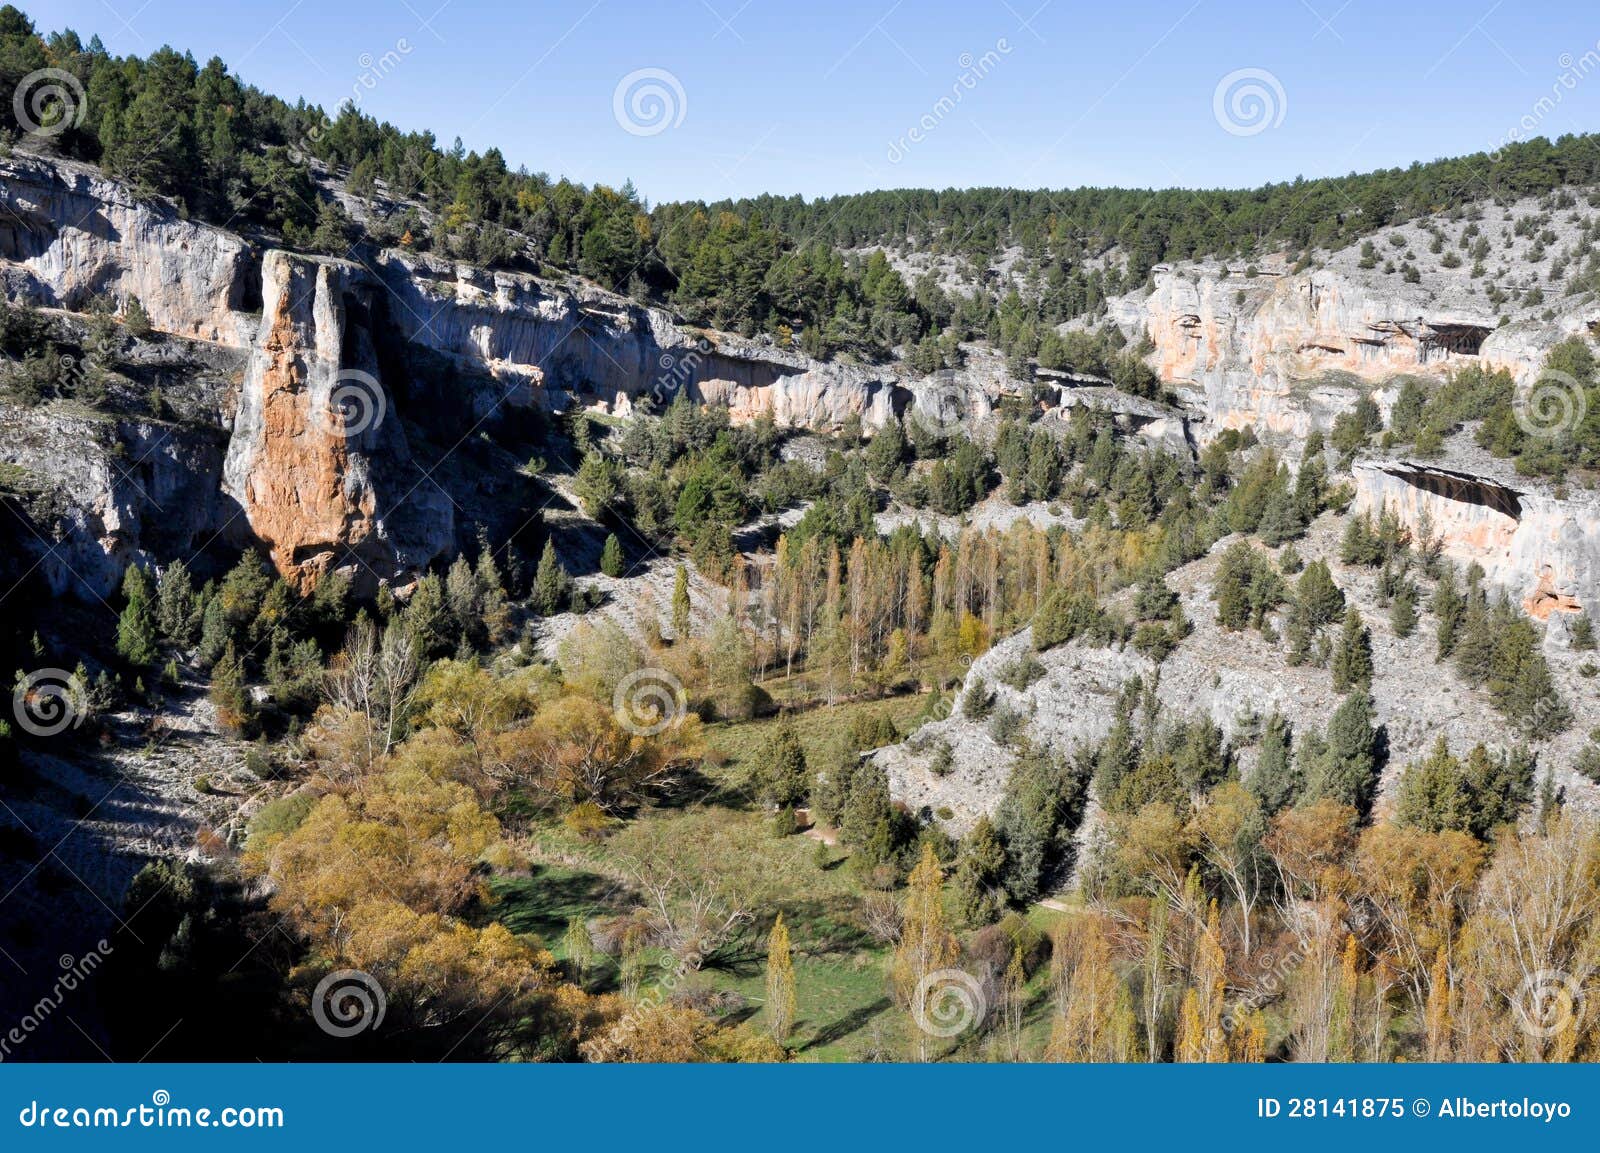 lobos river canyon, soria (spain)